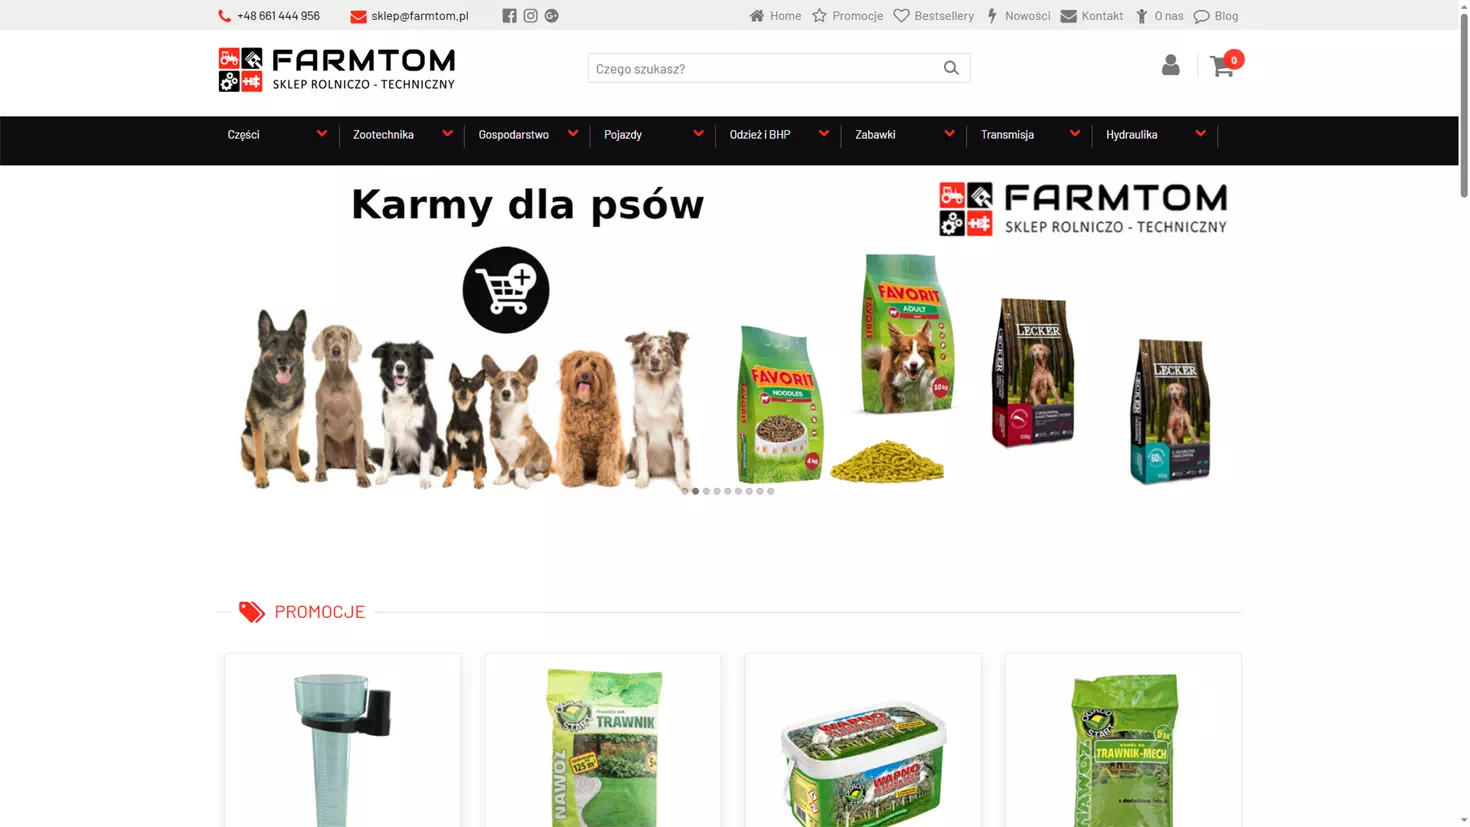 Realizacja www.farmtom.pl